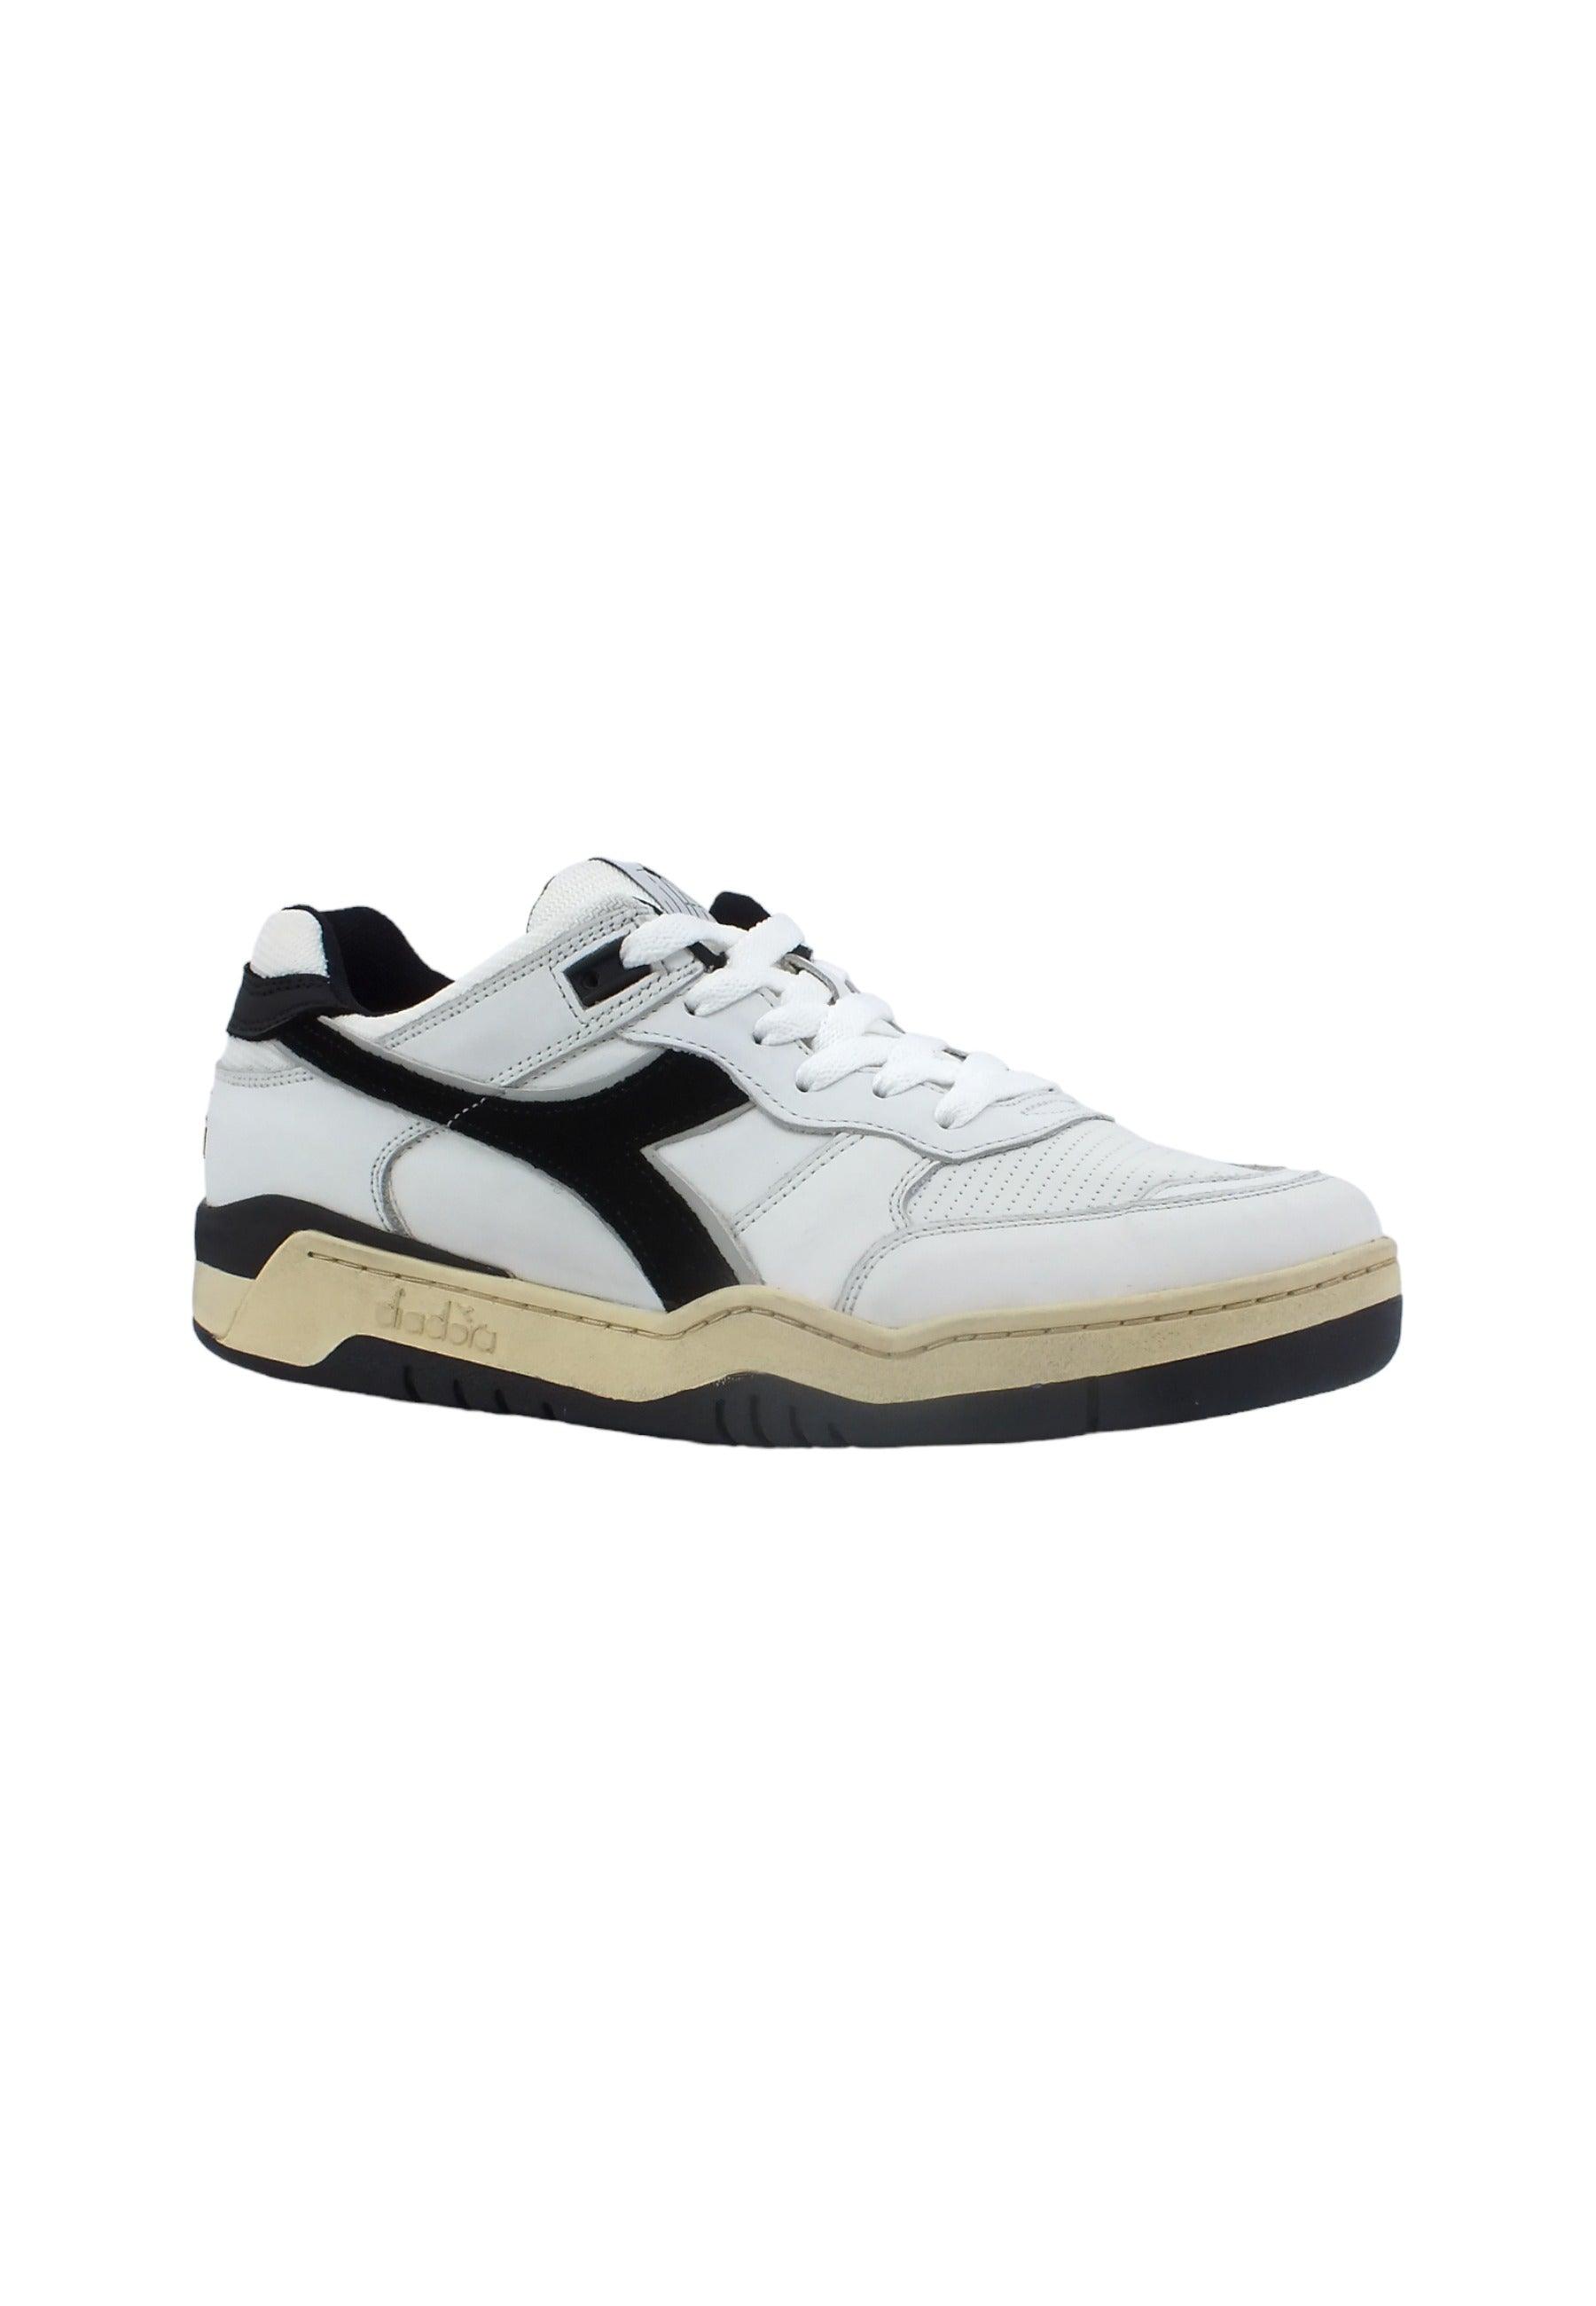 DIADORA B.560 Used Sneaker Uomo White Black 201.18011701C0351 - Sandrini Calzature e Abbigliamento